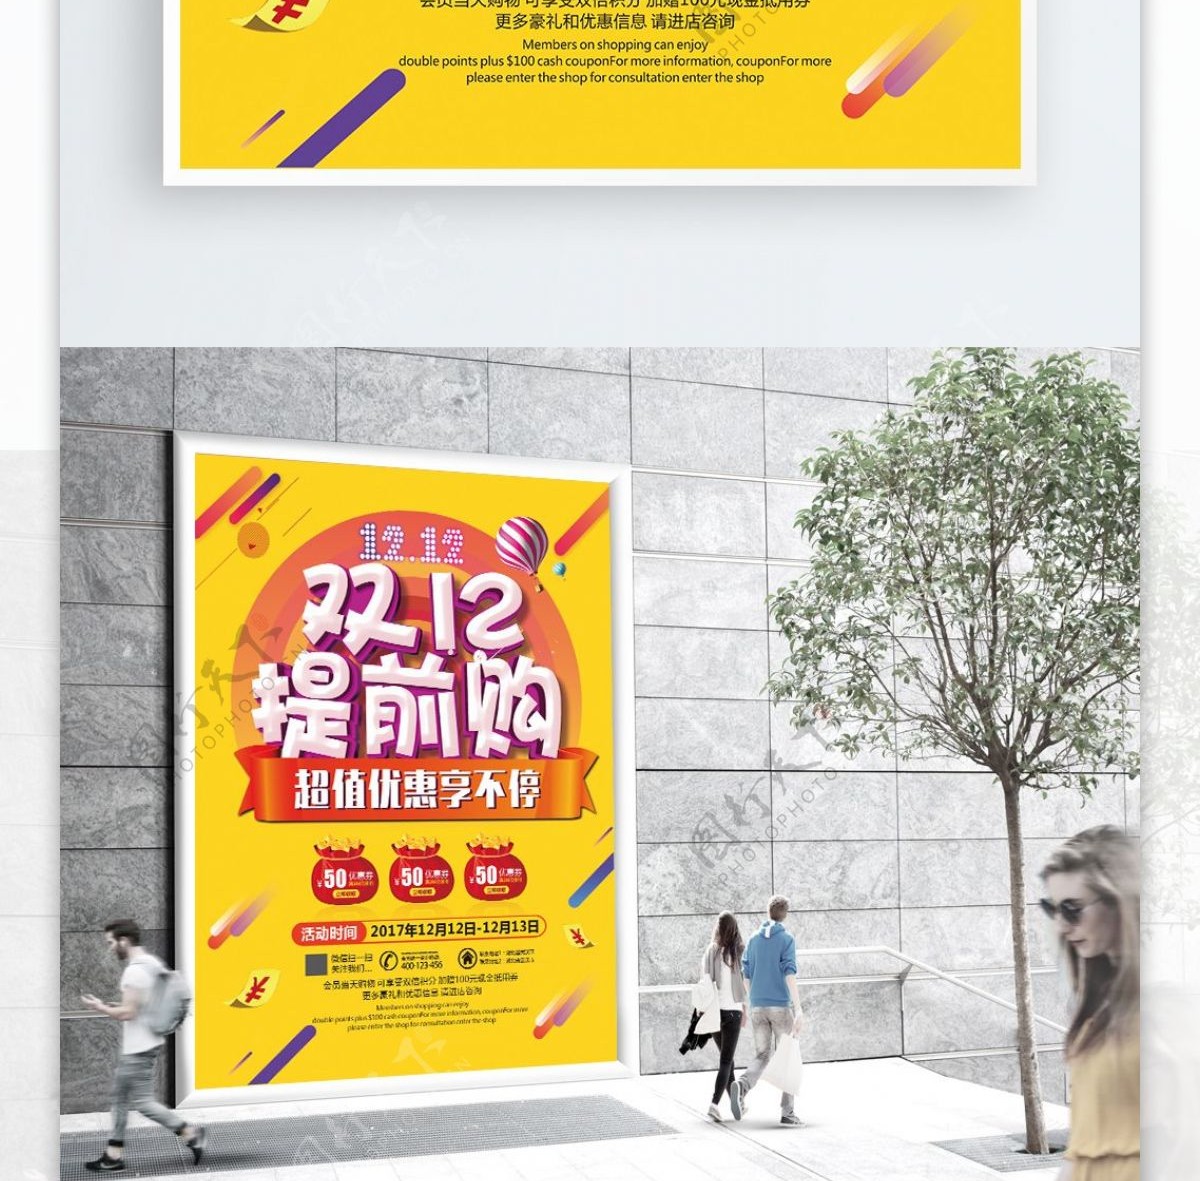 2017双12活动促销海报设计CDR模板